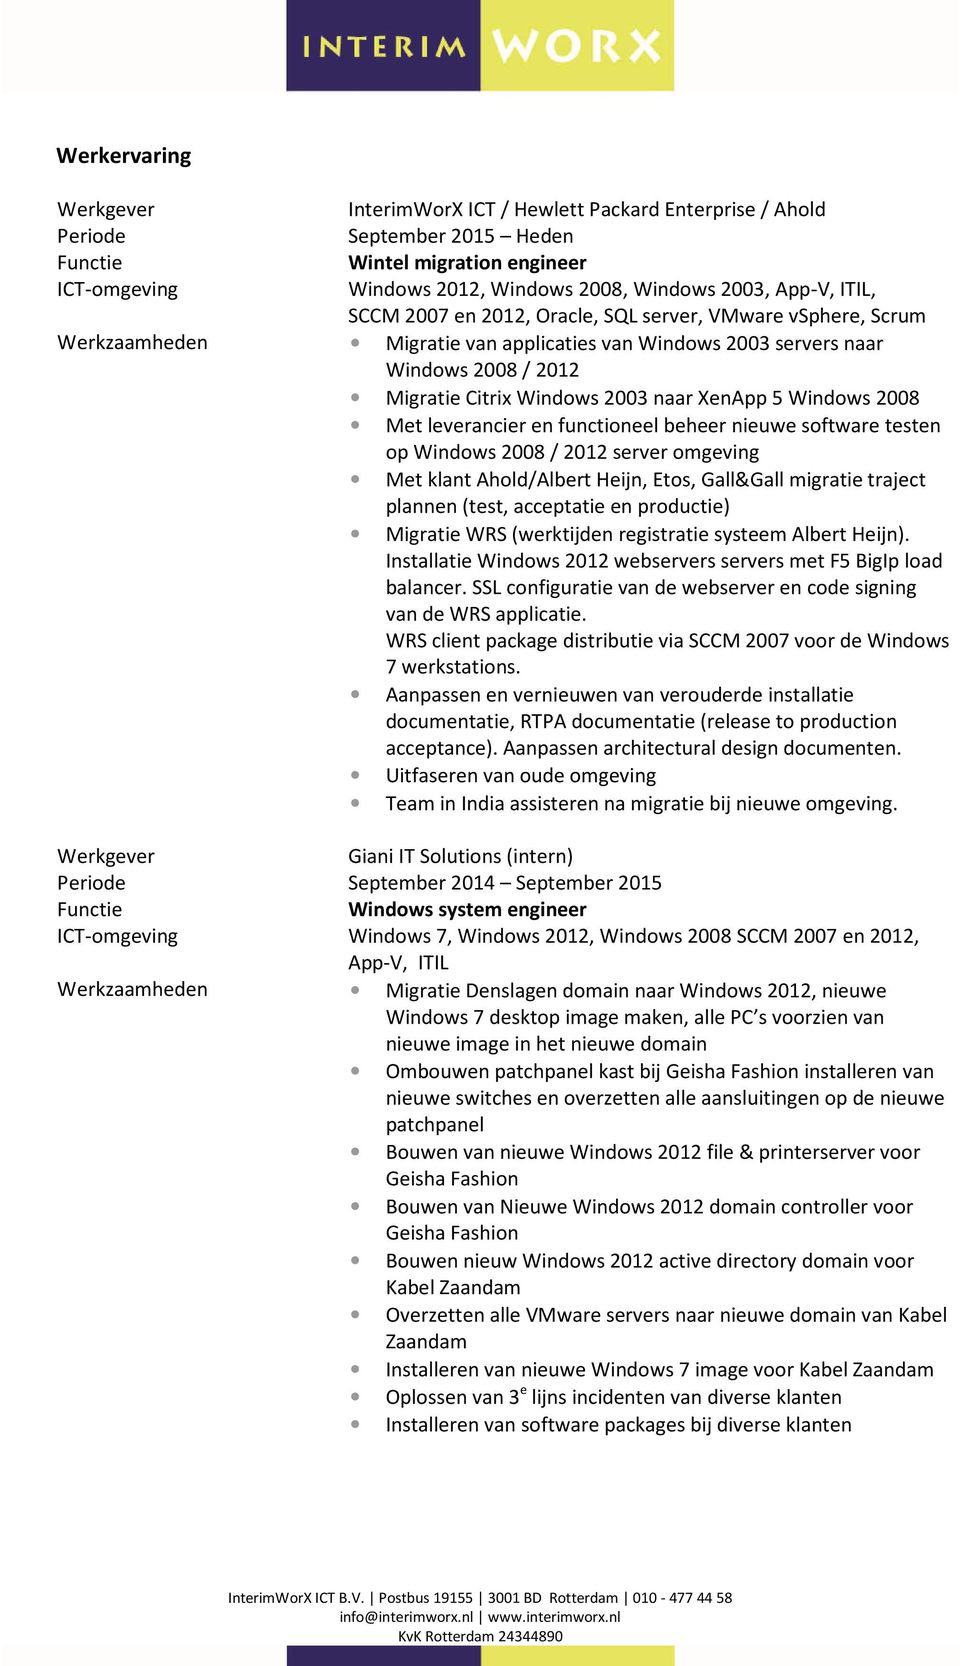 leverancier en functioneel beheer nieuwe software testen op Windows 2008 / 2012 server omgeving Met klant Ahold/Albert Heijn, Etos, Gall&Gall migratie traject plannen (test, acceptatie en productie)